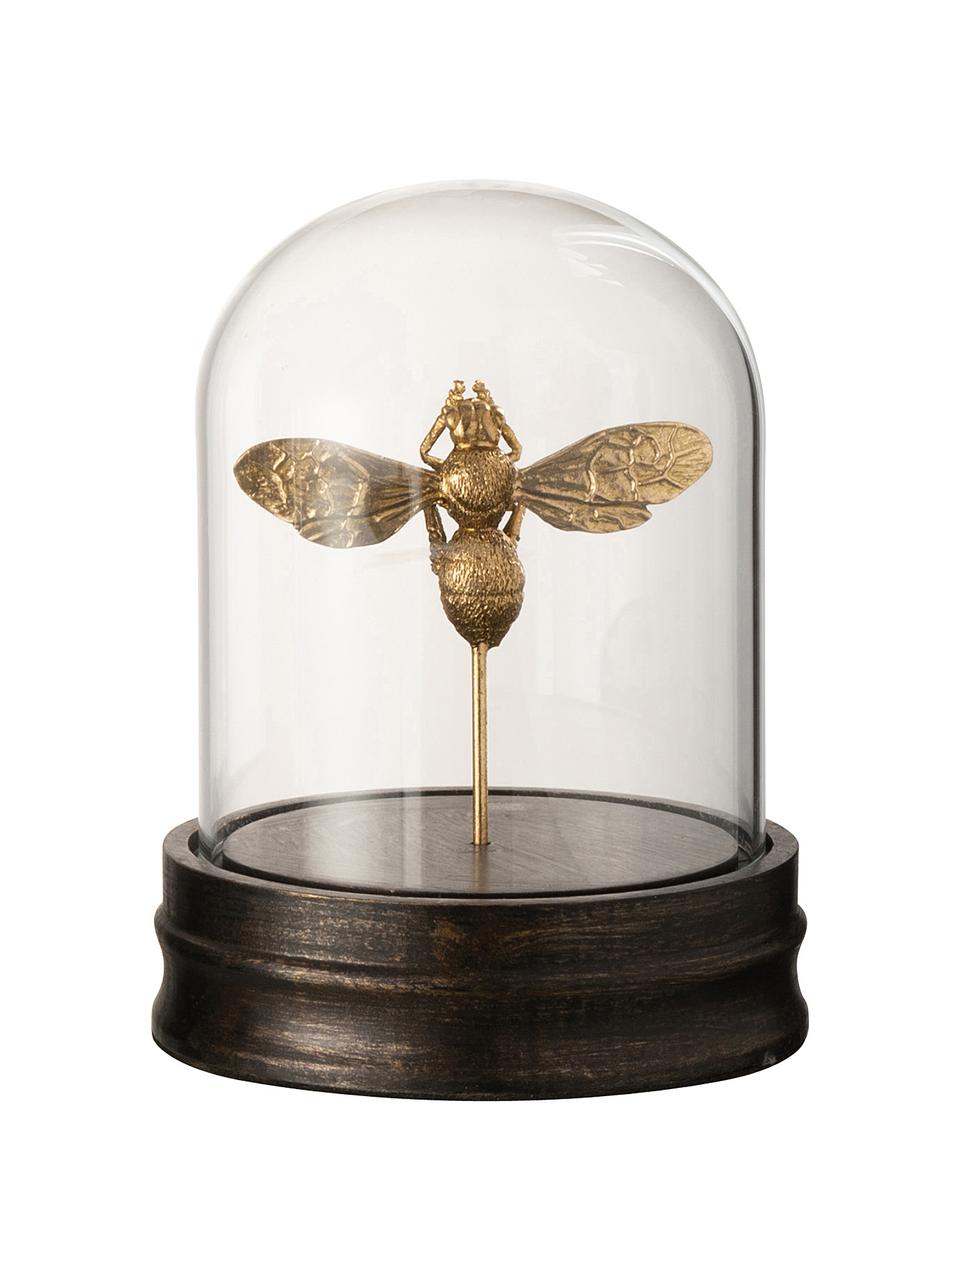 Dekorácia Bumblebee, Odtiene zlatej, Ø 13 x V 28 cm